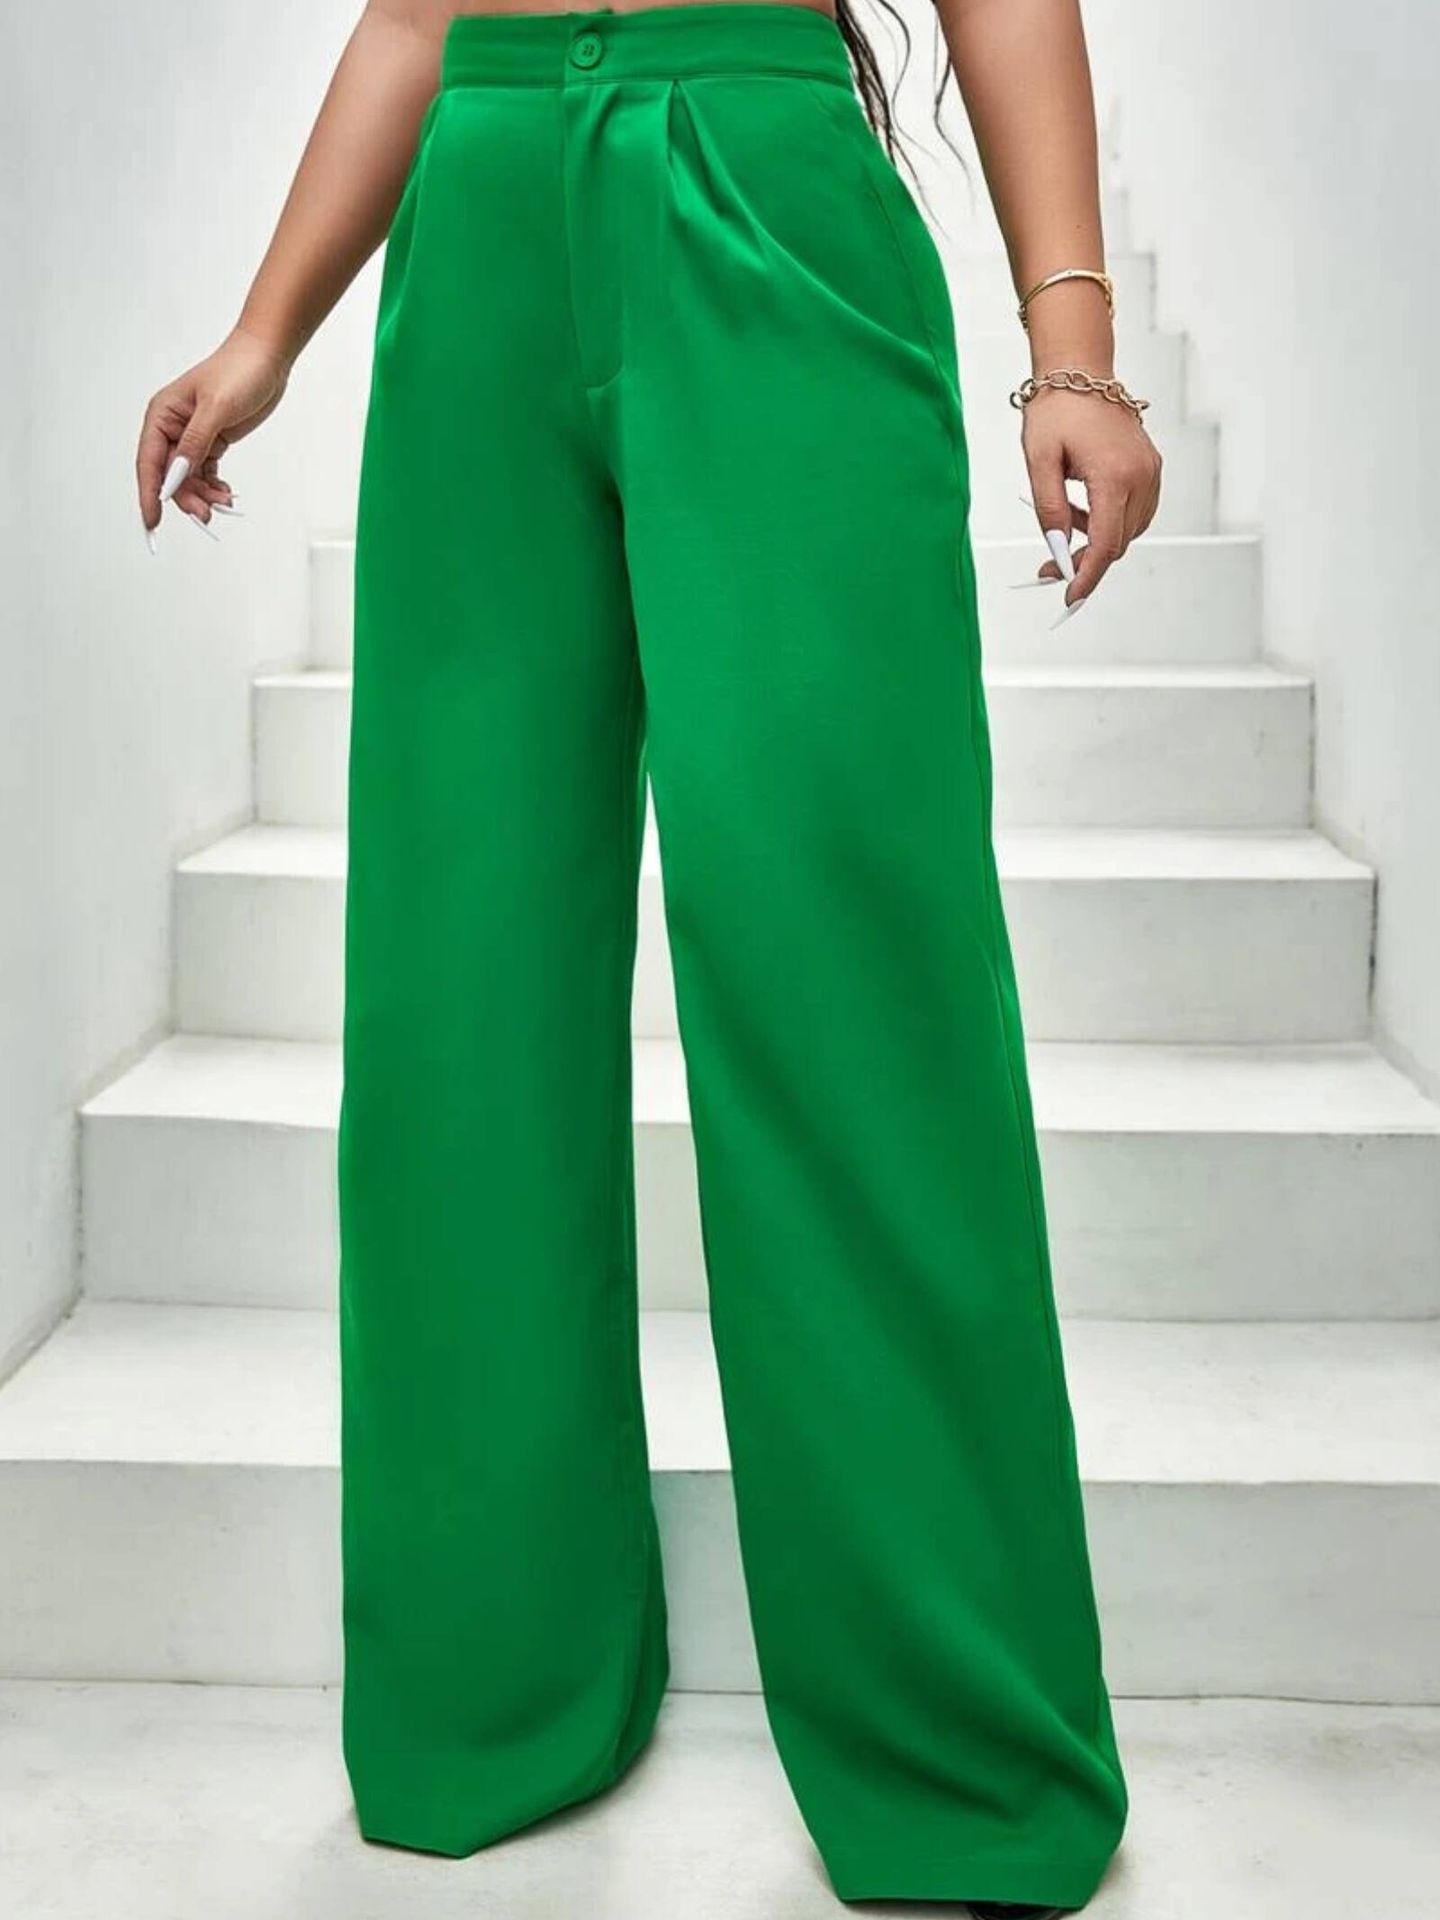 30 LOOKS para COMBINAR un PANTALÓN VERDE - ¡Últimas tendencias!  Pantalones  verdes mujer, Pantalones verdes, Combinar pantalon verde